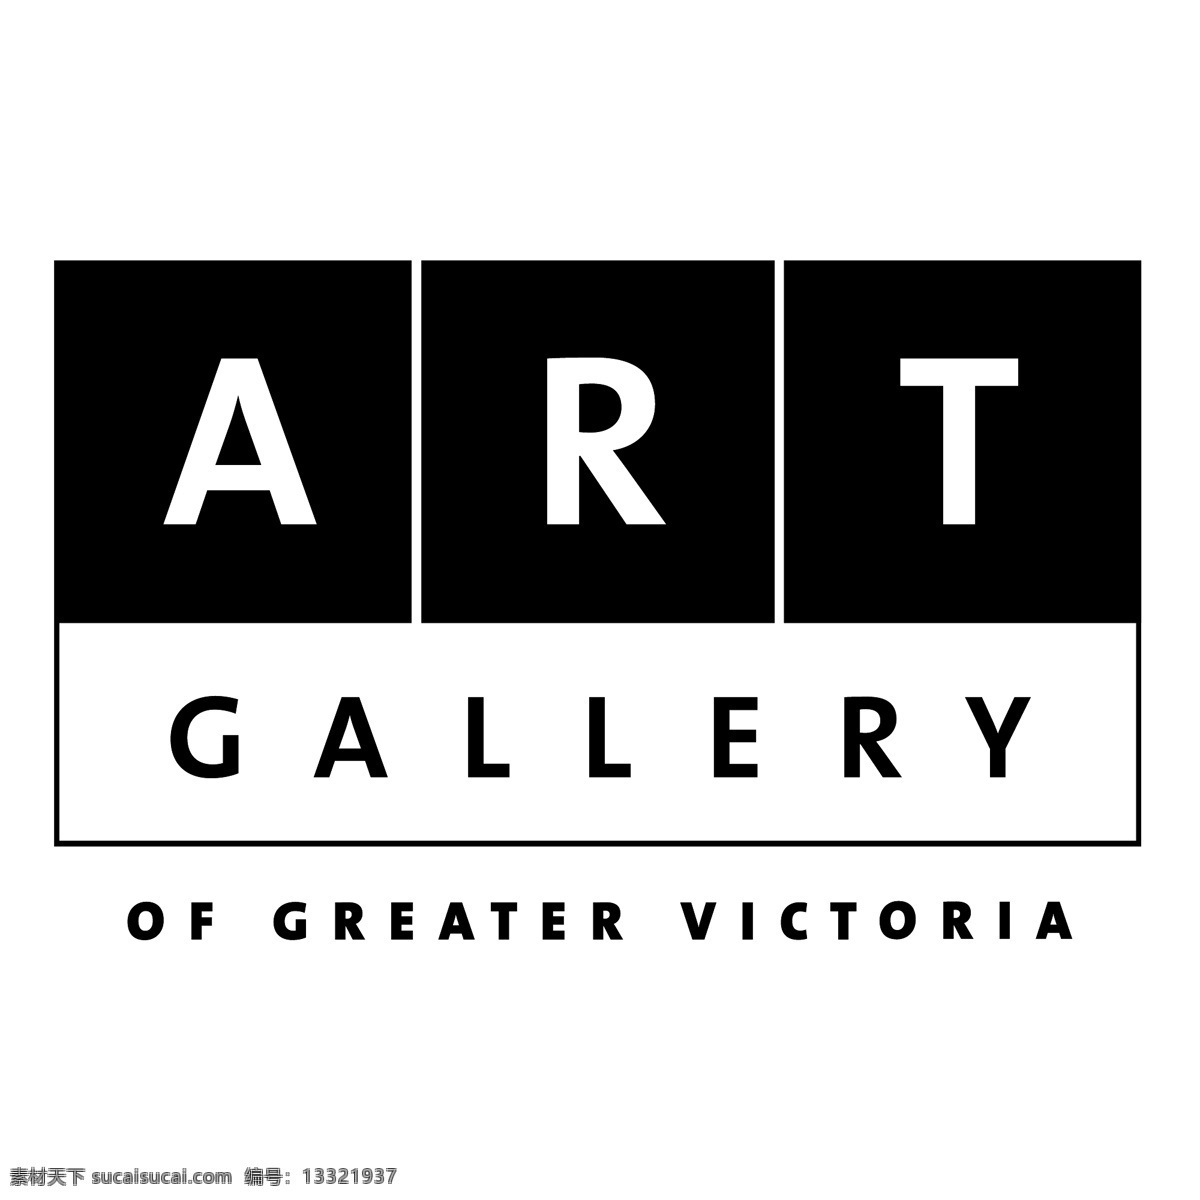 维多利亚 艺术 画廊 免费 矢量图片 美术馆的更大 更大 更 大 维多利亚画廊 大维 多利亚 矢量 向量 向量画廊